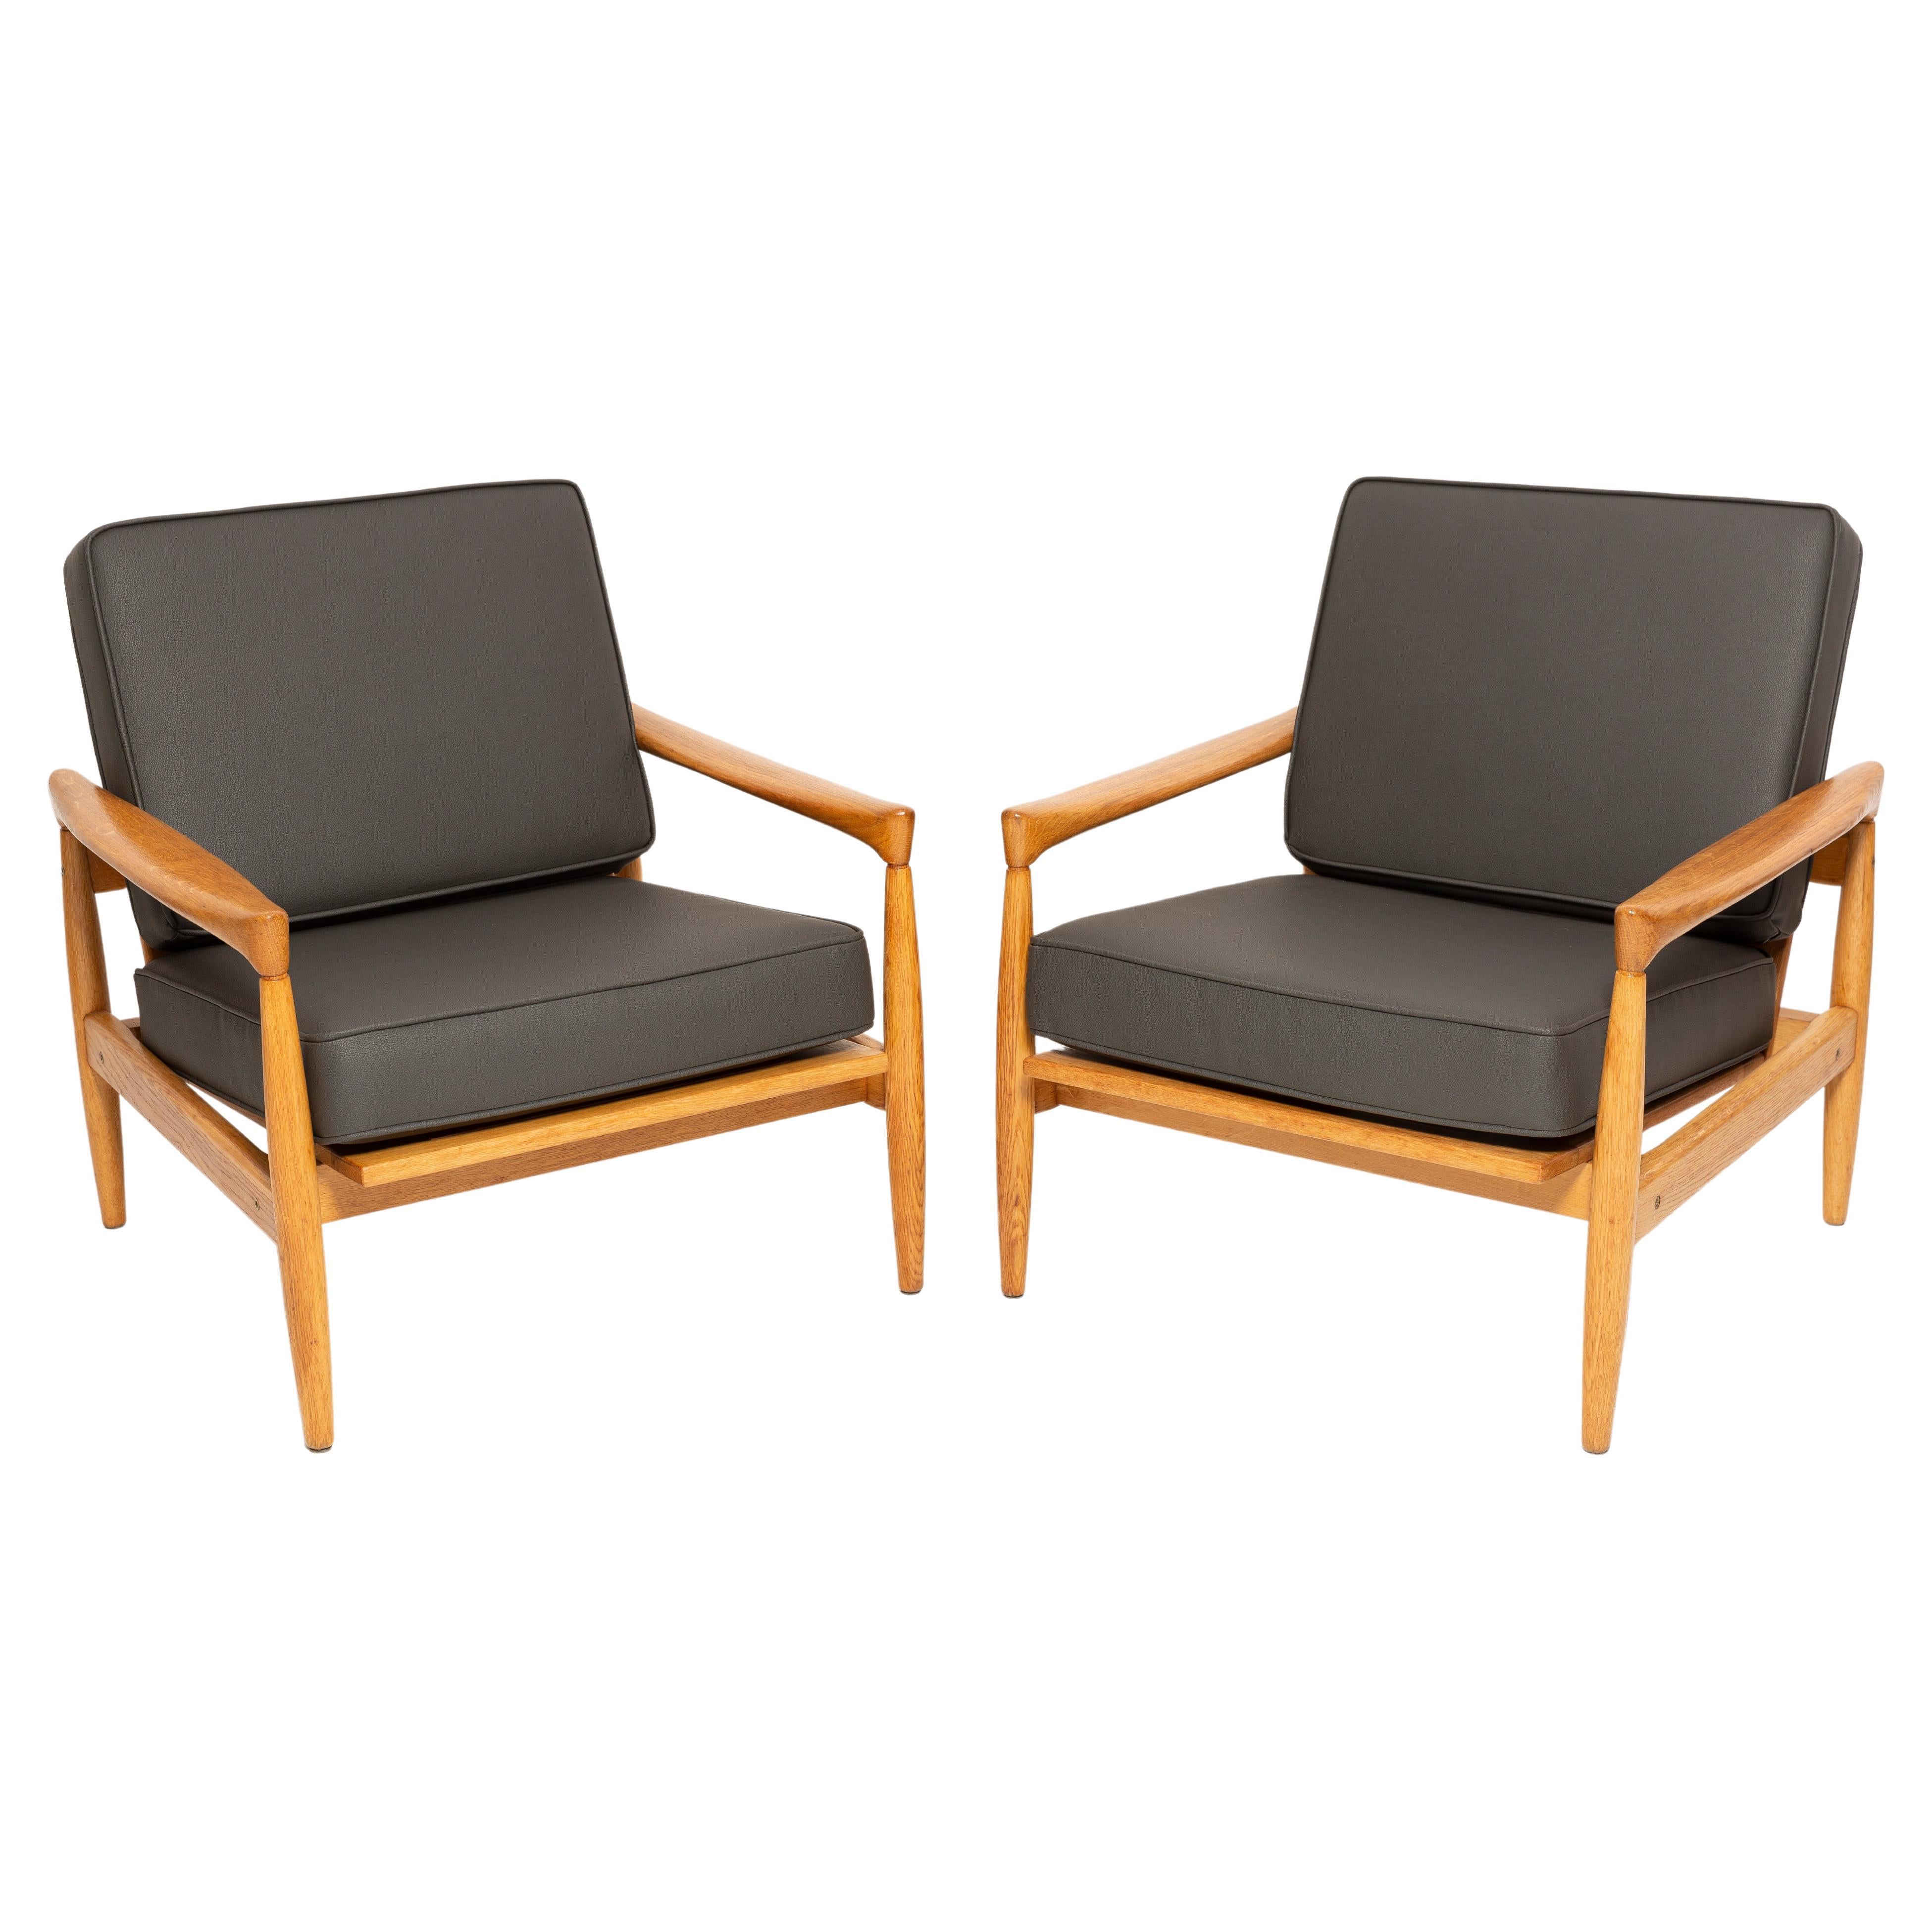 Set aus 2 skandinavischen Sesseln aus Eichenholz „Kolding“ von Erik Worts, 1960er Jahre